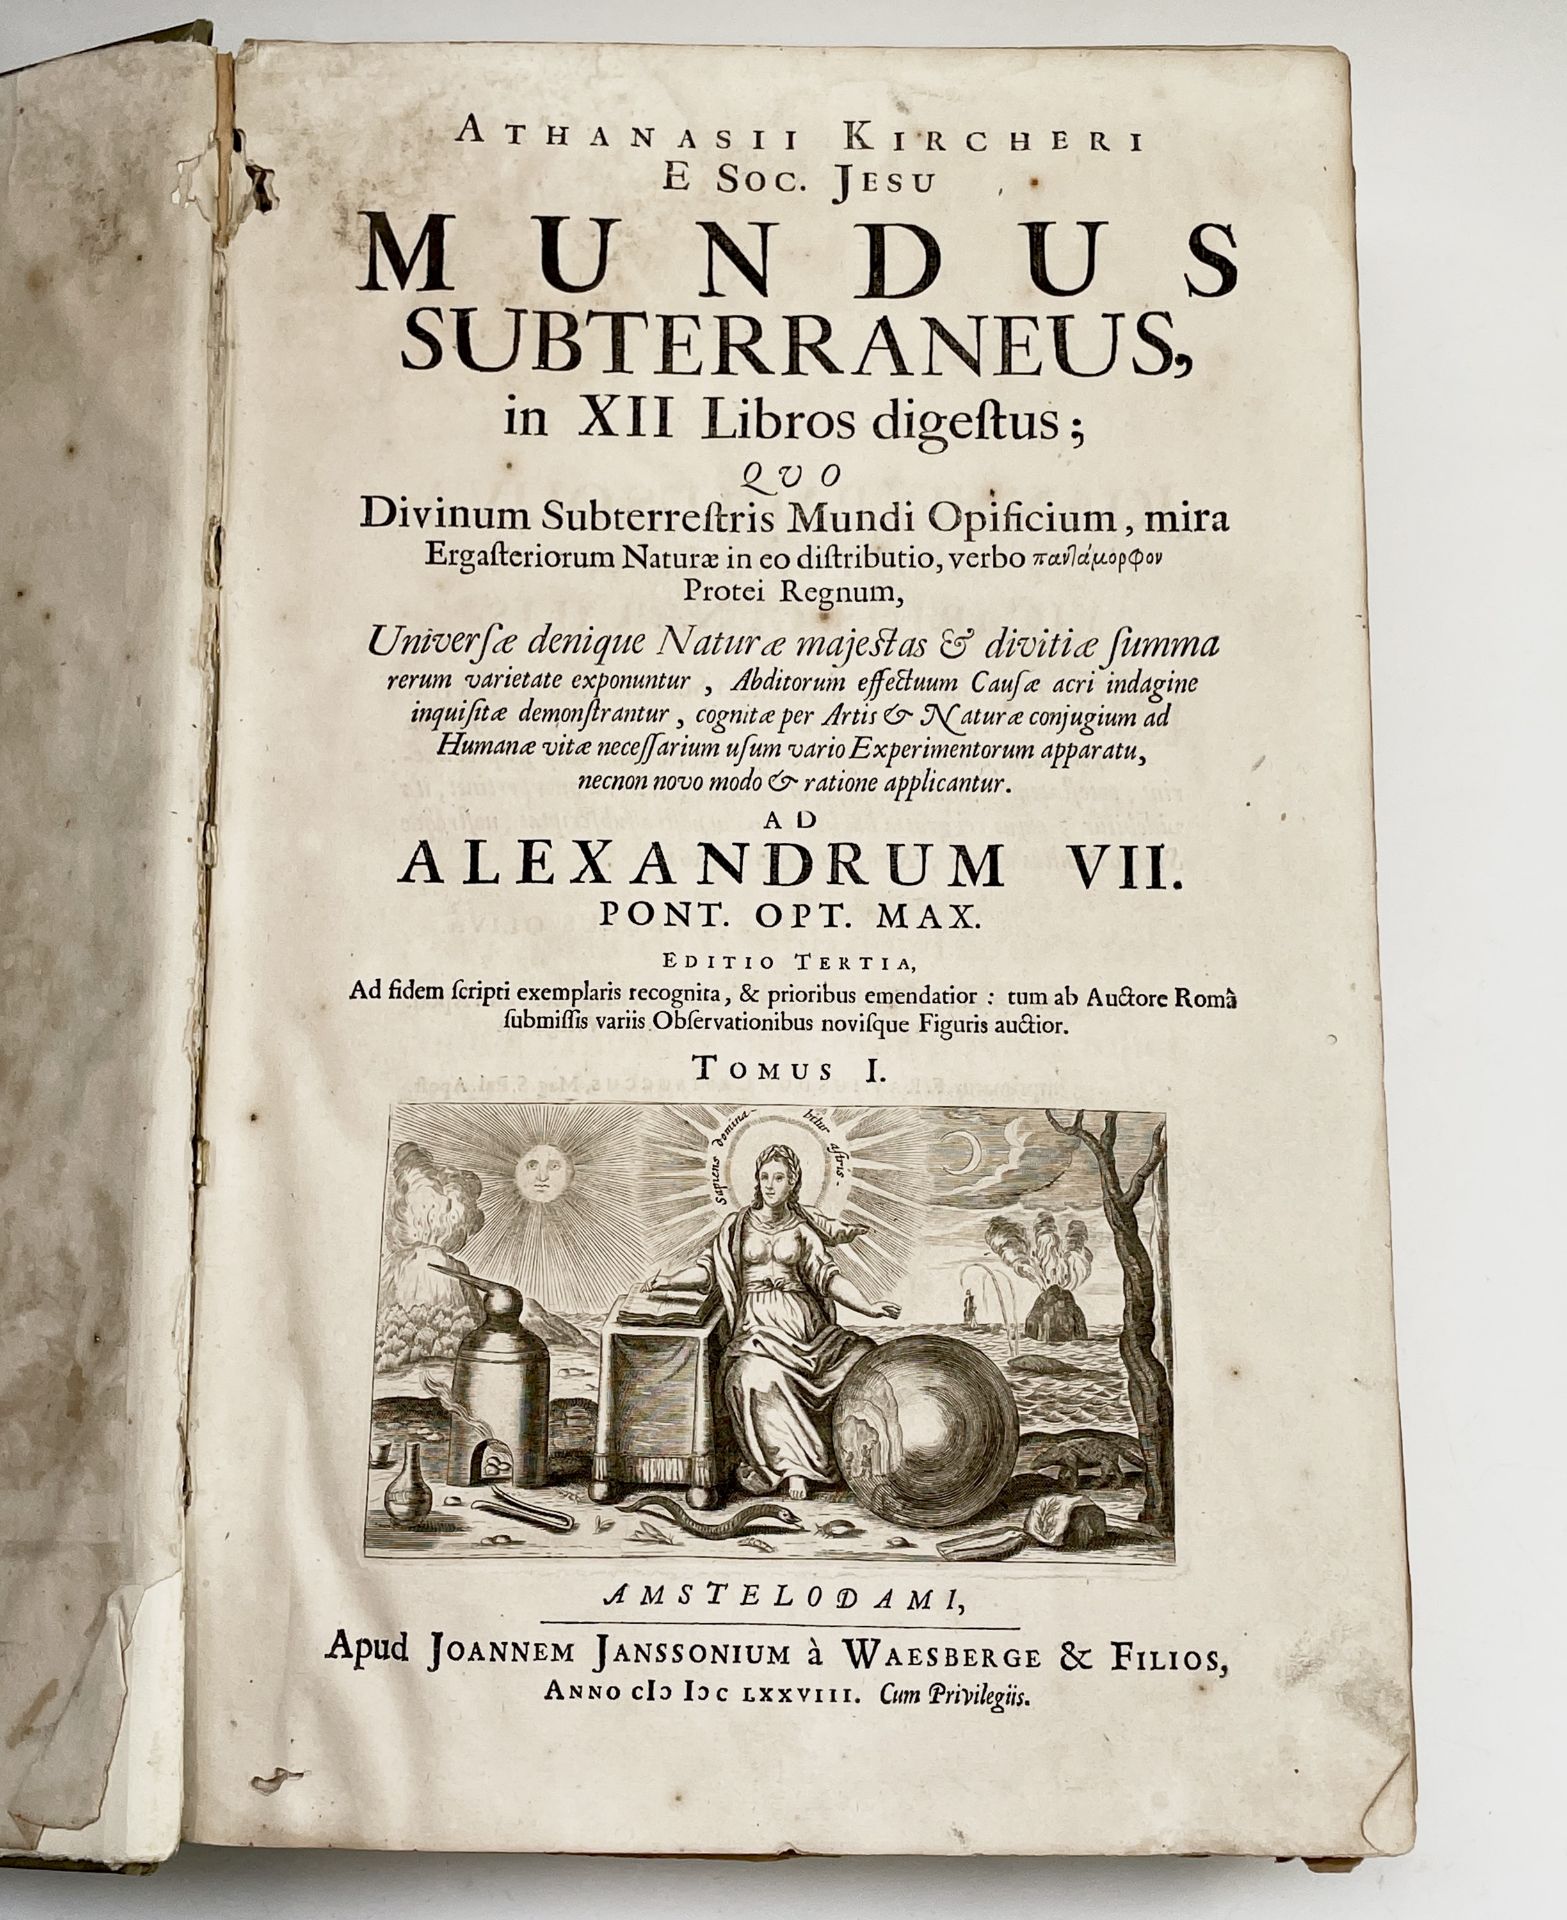 ATHANASII KIRCHERI. E. SOC. JESU. Mundus Subterraneus in XII Libros digeotus quo Divinum - Image 2 of 15